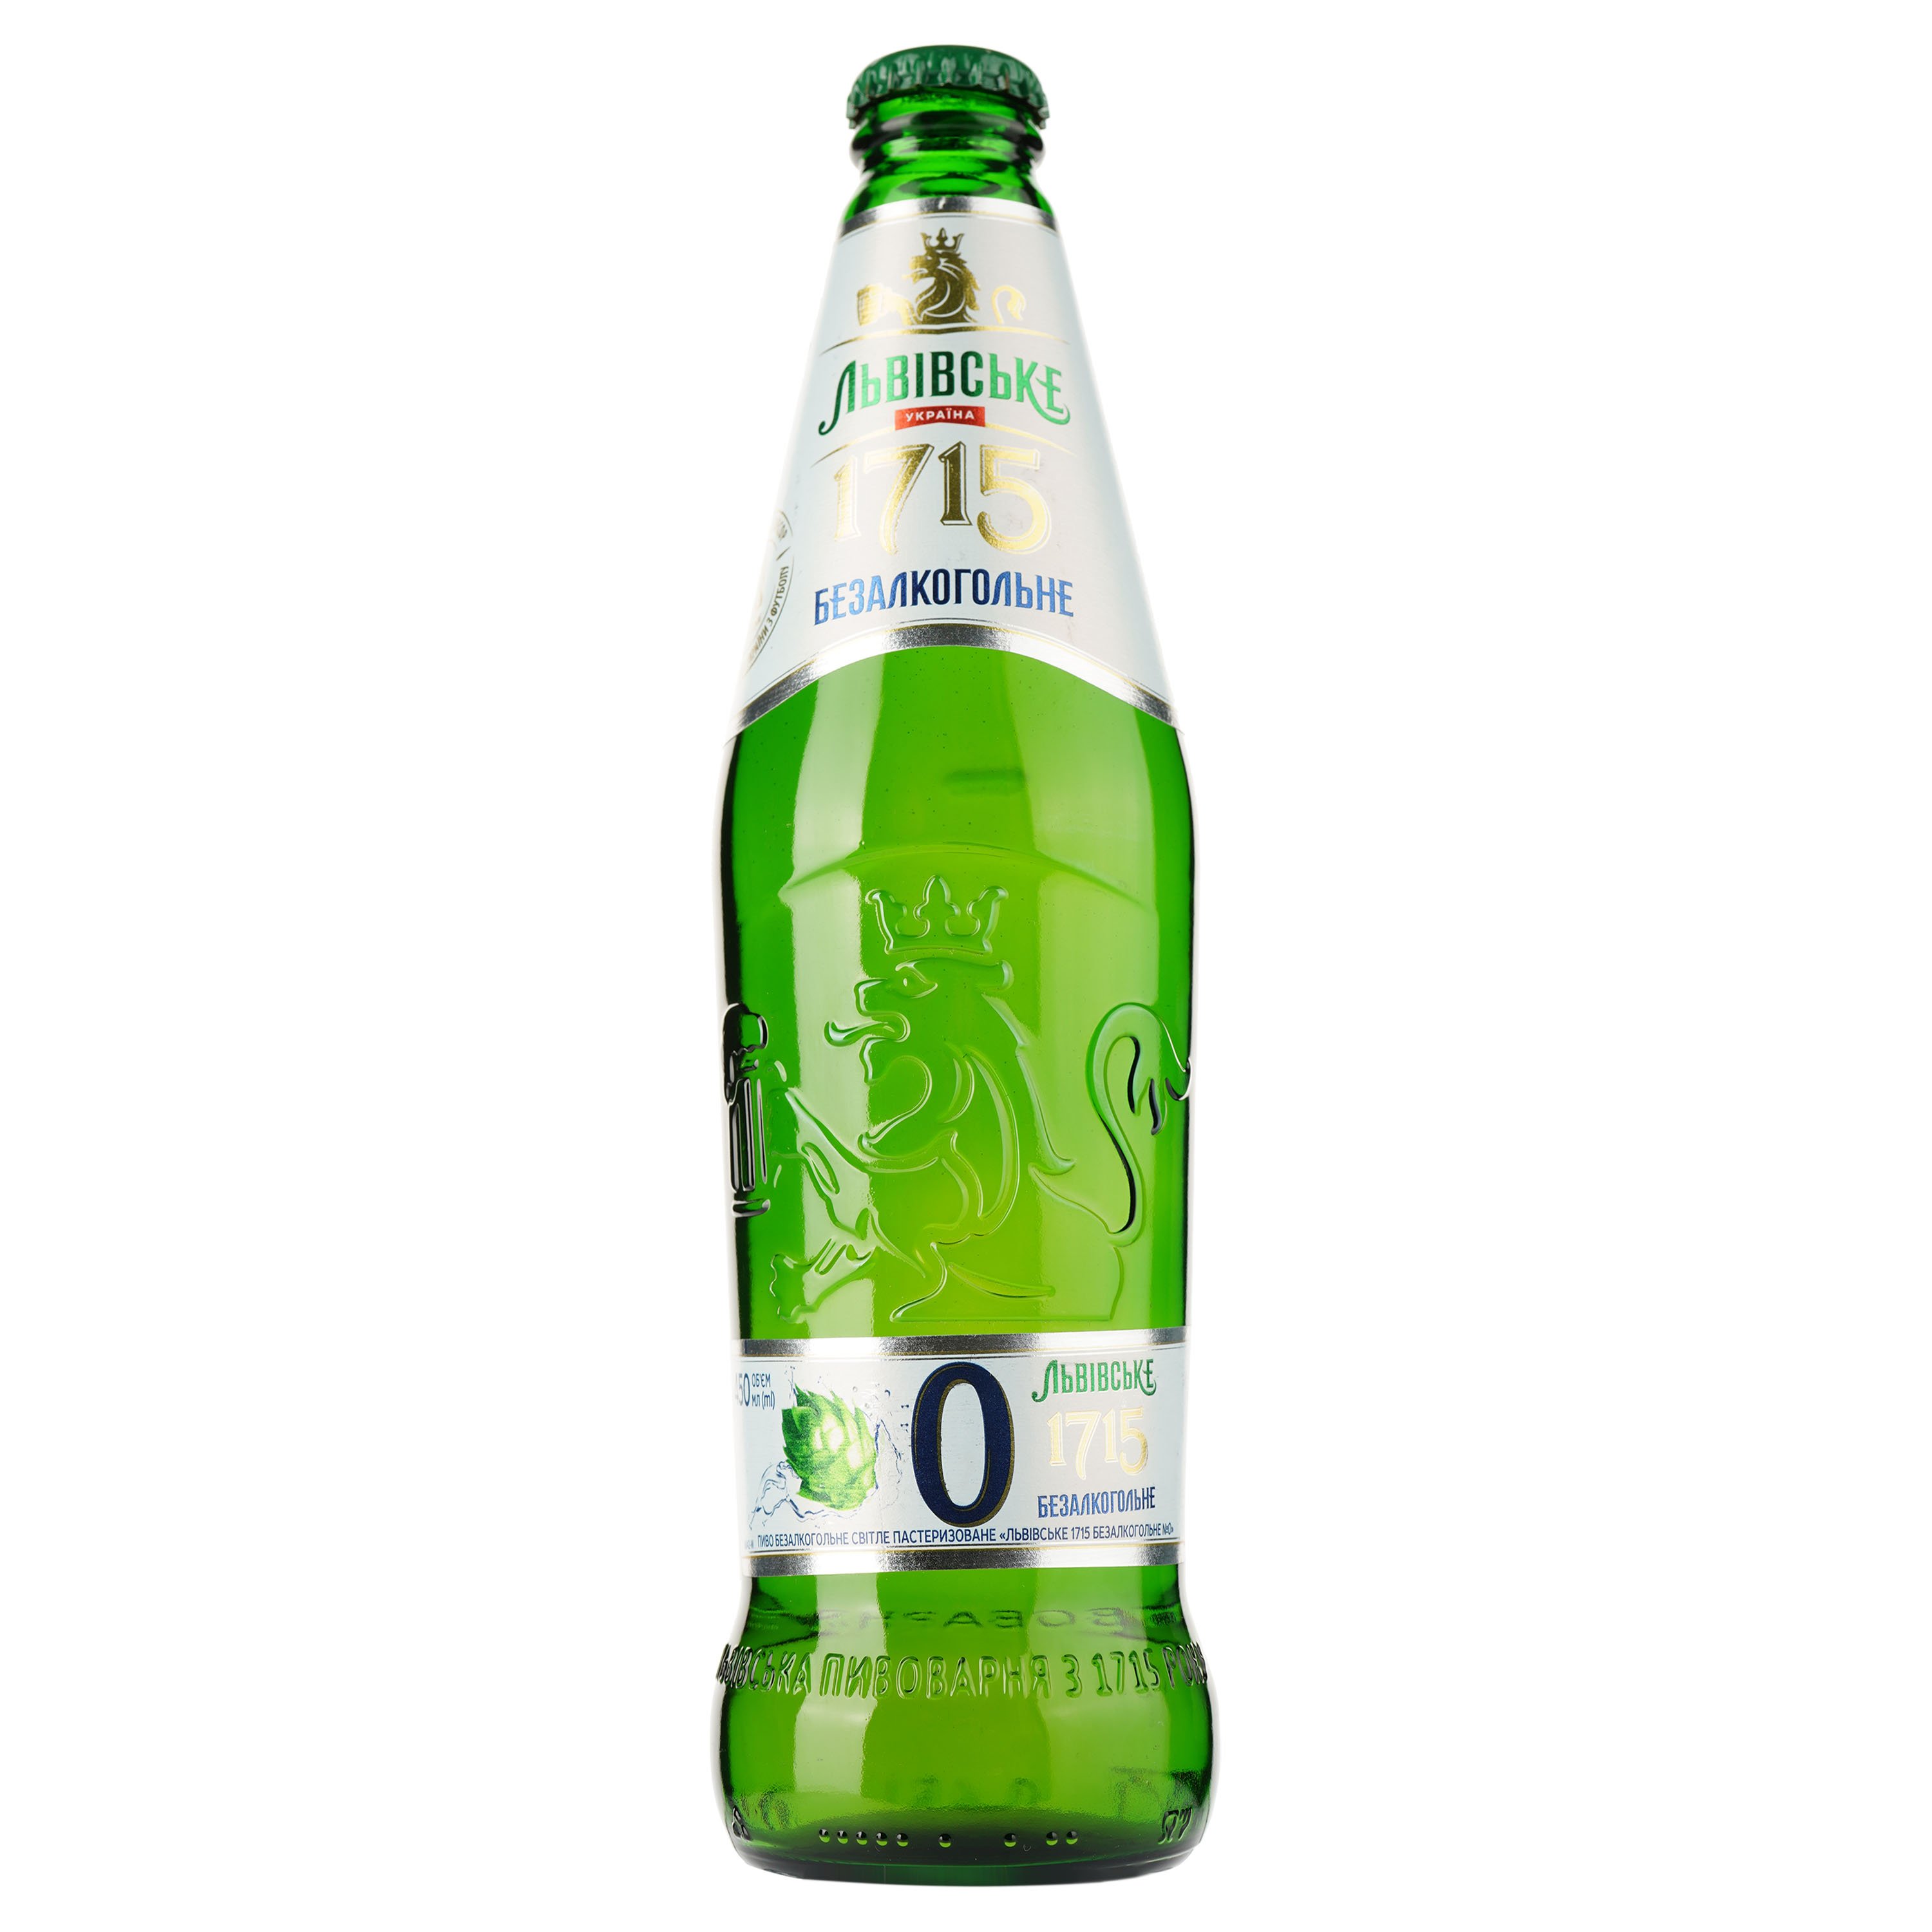 Пиво Львівське 1715 №0, светлое, безалкогольное, 0,45 л (909342) - фото 1